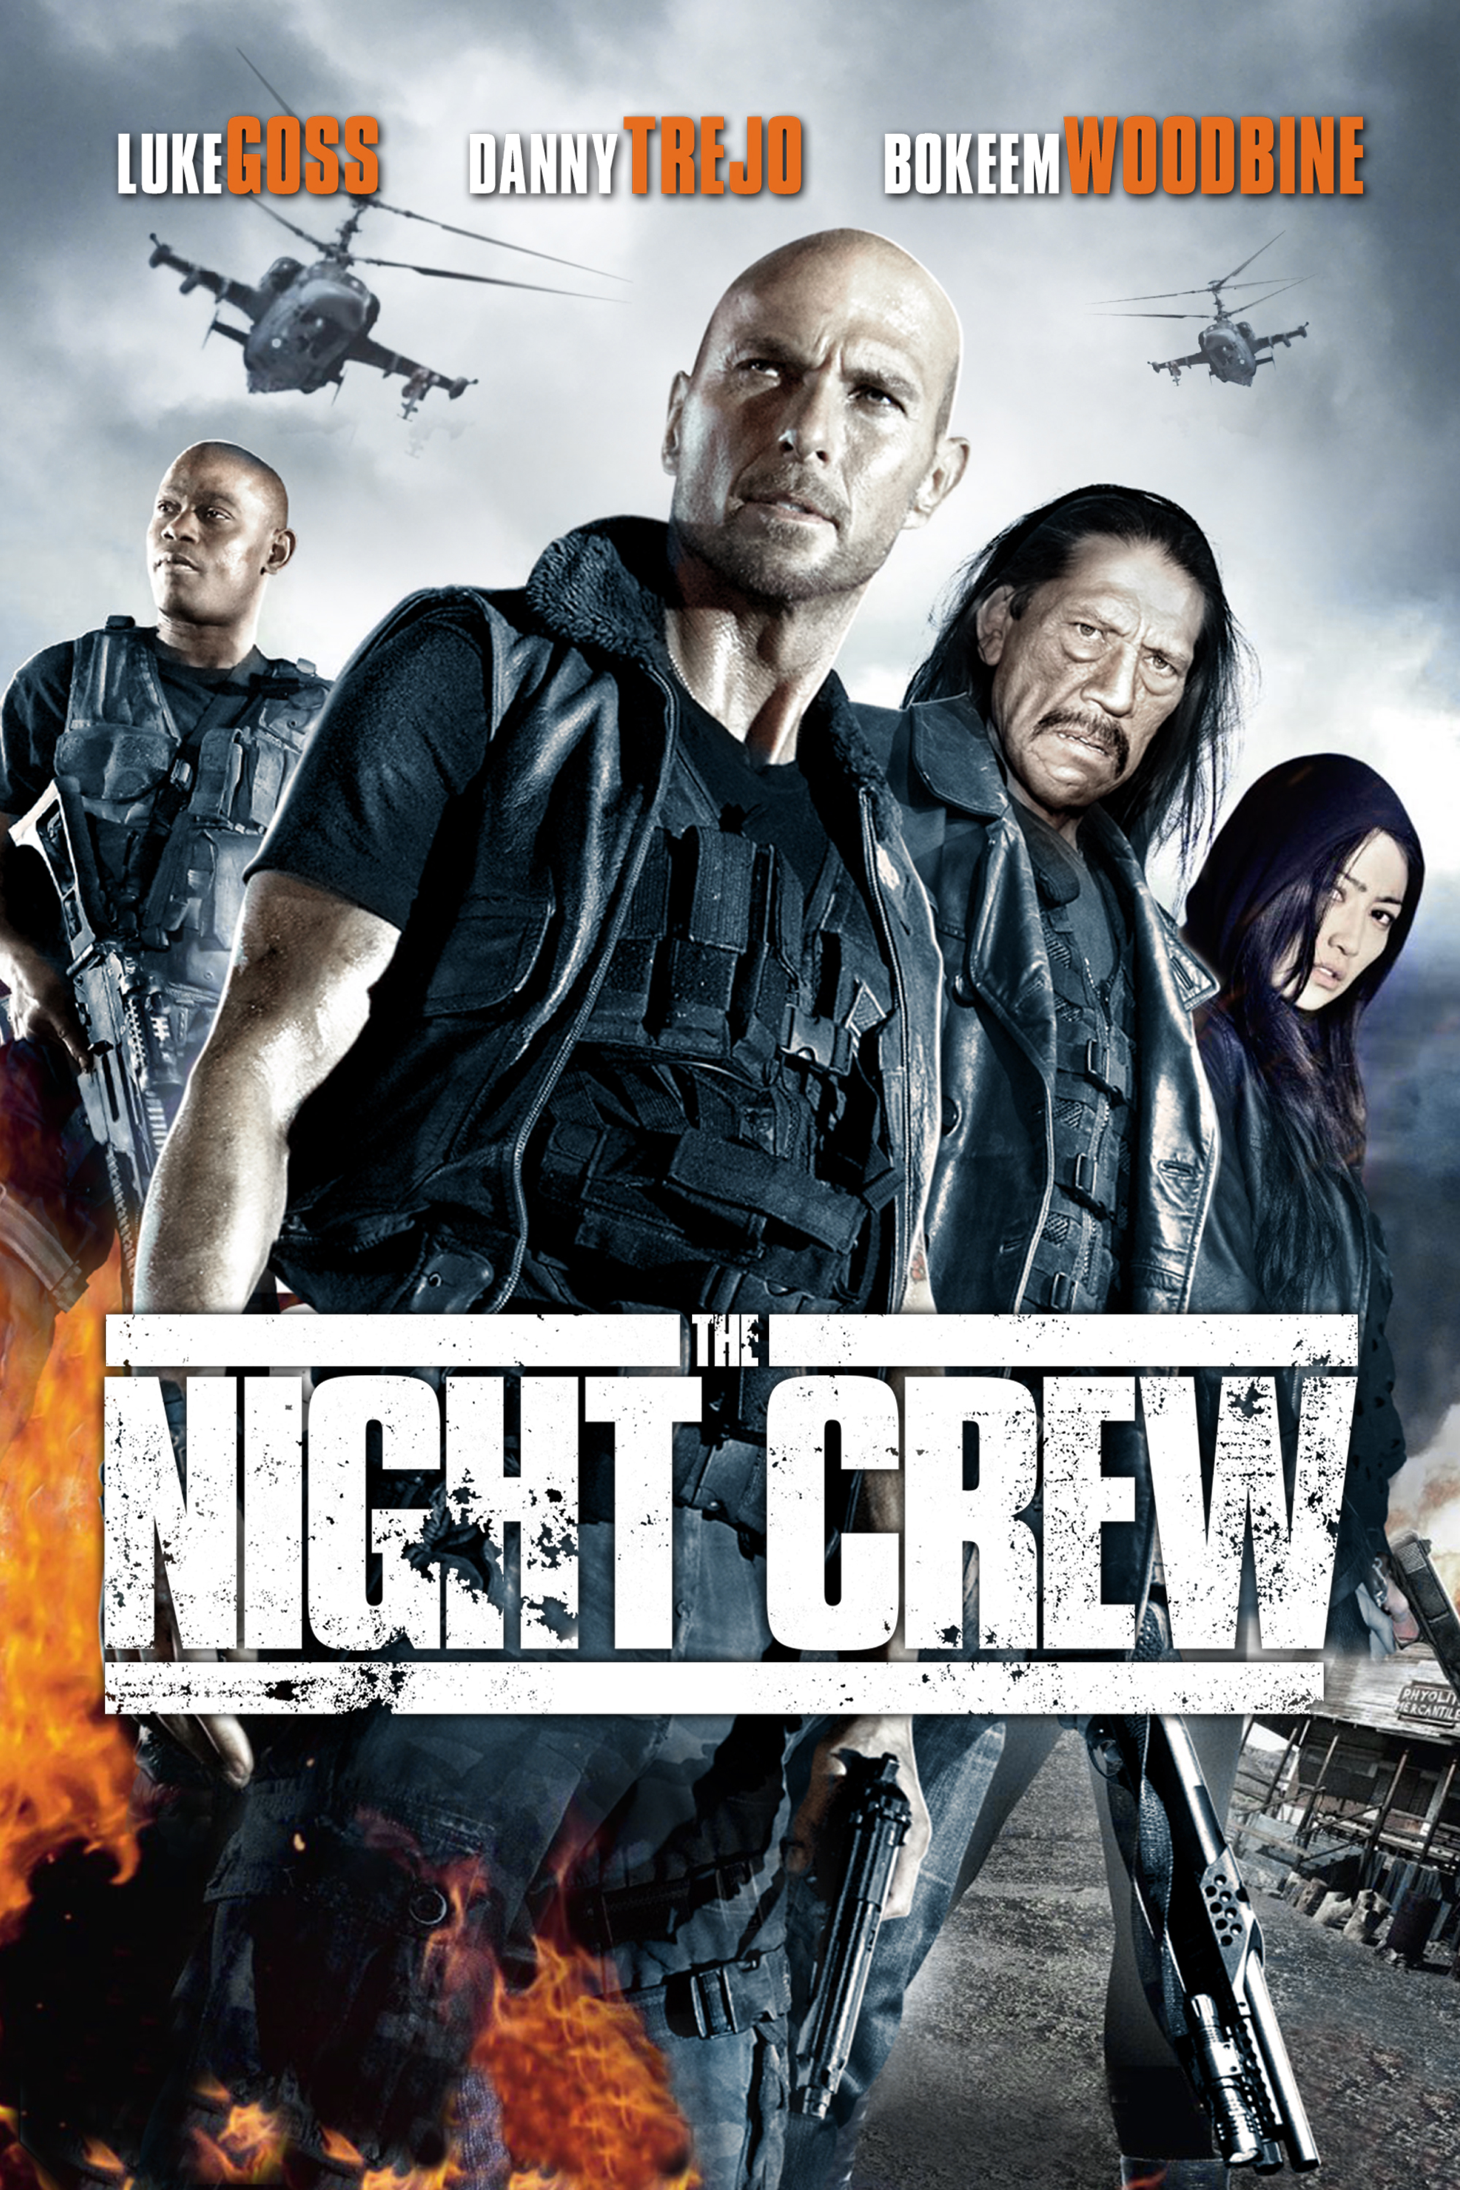 The Night Crew [HD] (2015)